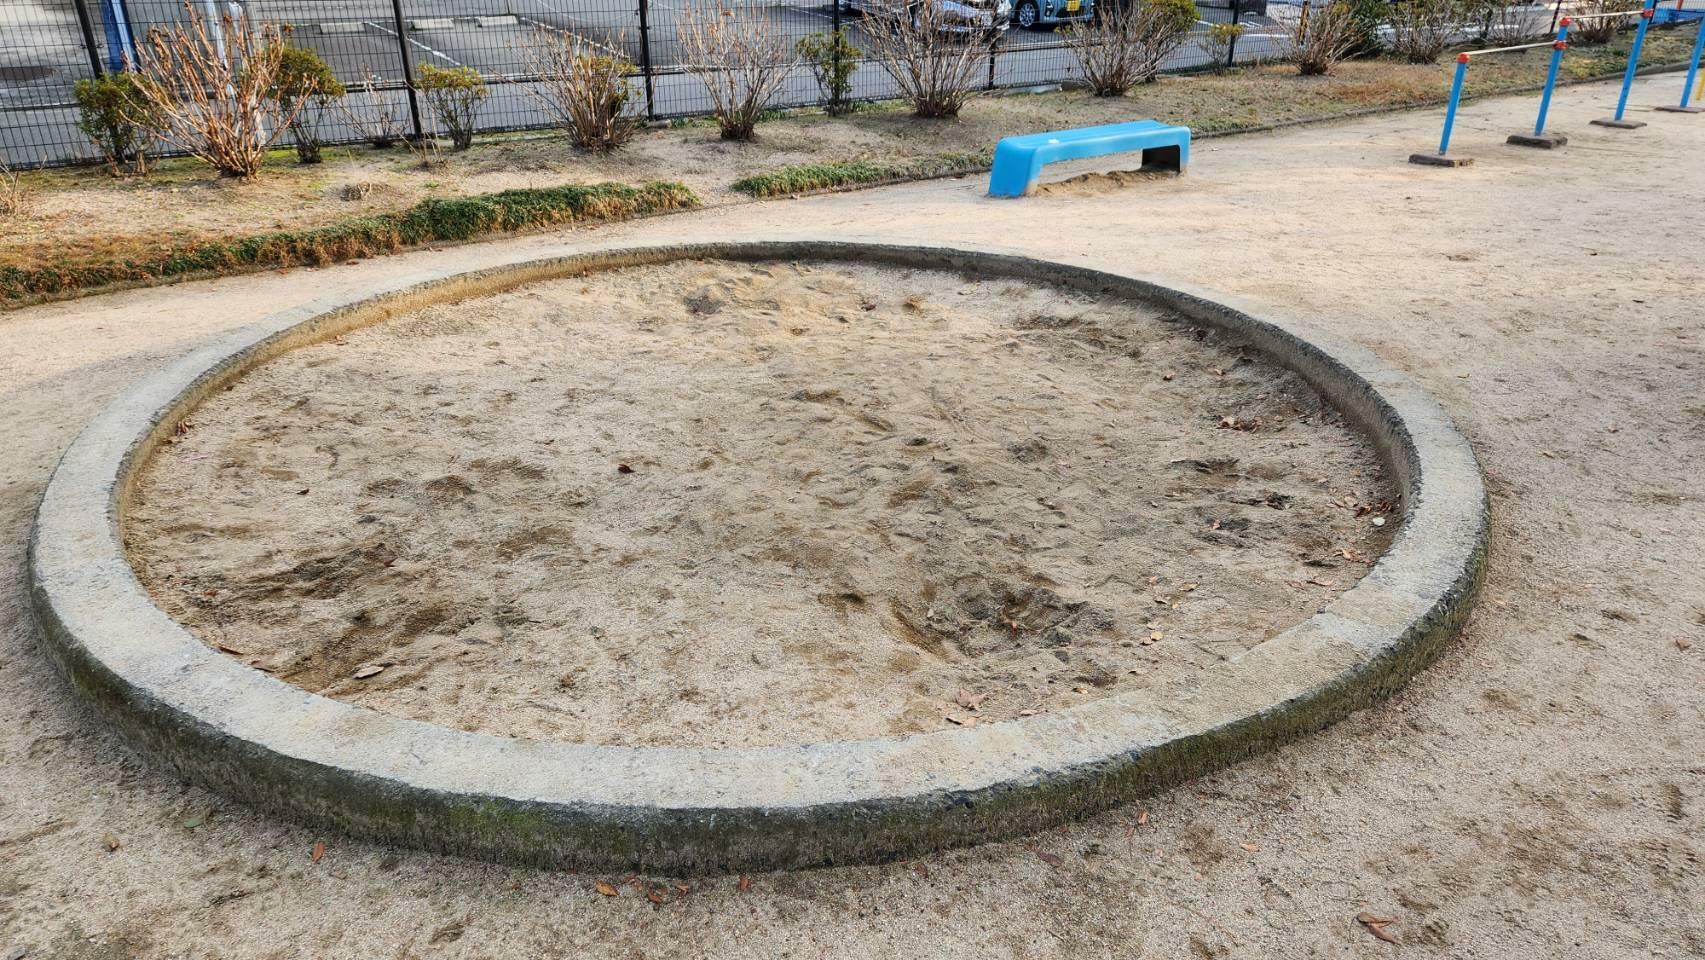 最近、砂場を使用することができない公園も増えてるそう。横川第二公園には円形の砂場がありました。